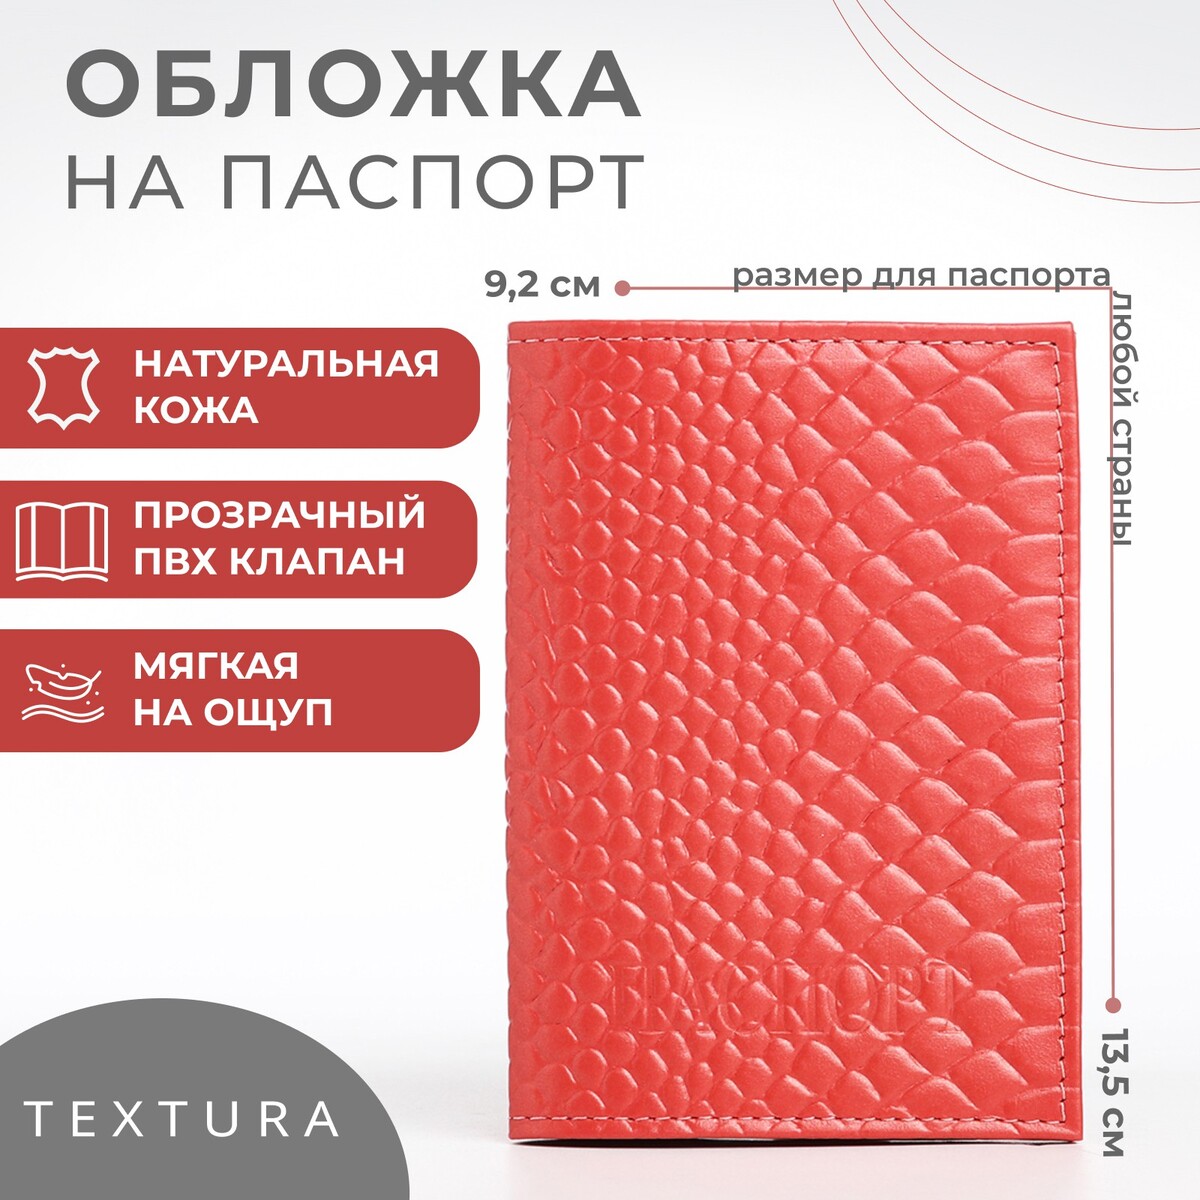 Обложка для паспорта textura, цвет чайной розы обложка для паспорта textura молочный